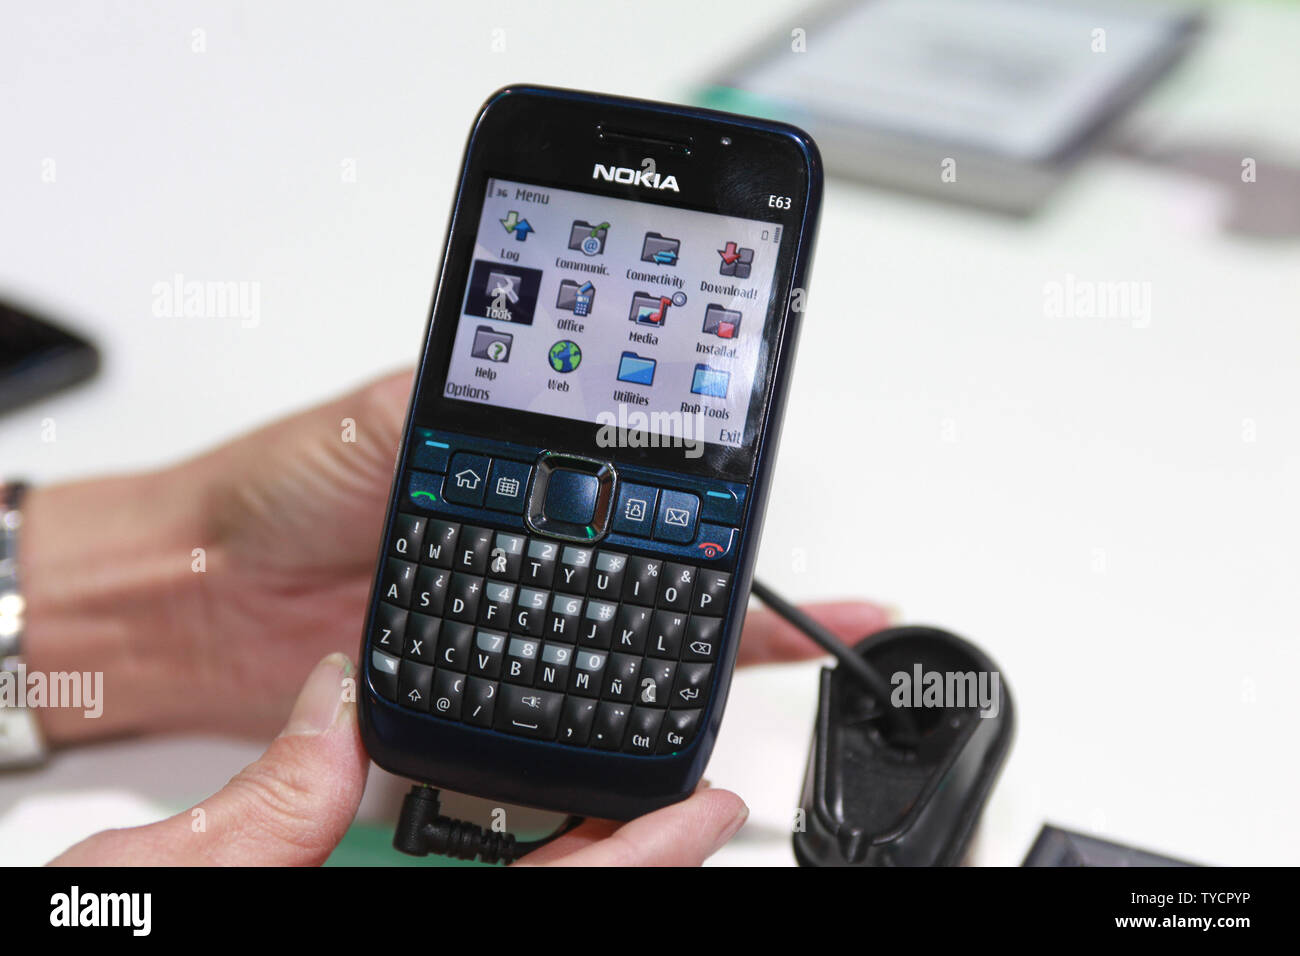 Nokia Corporation lance son nouveau modèle E63 Clavier Qwerty téléphone  mobile pendant l'International Consumer Electronics Show (CES) de Las Vegas  le 8 janvier 2009. Modèle Nokia E63 annoncé au CES coûtera 279 $